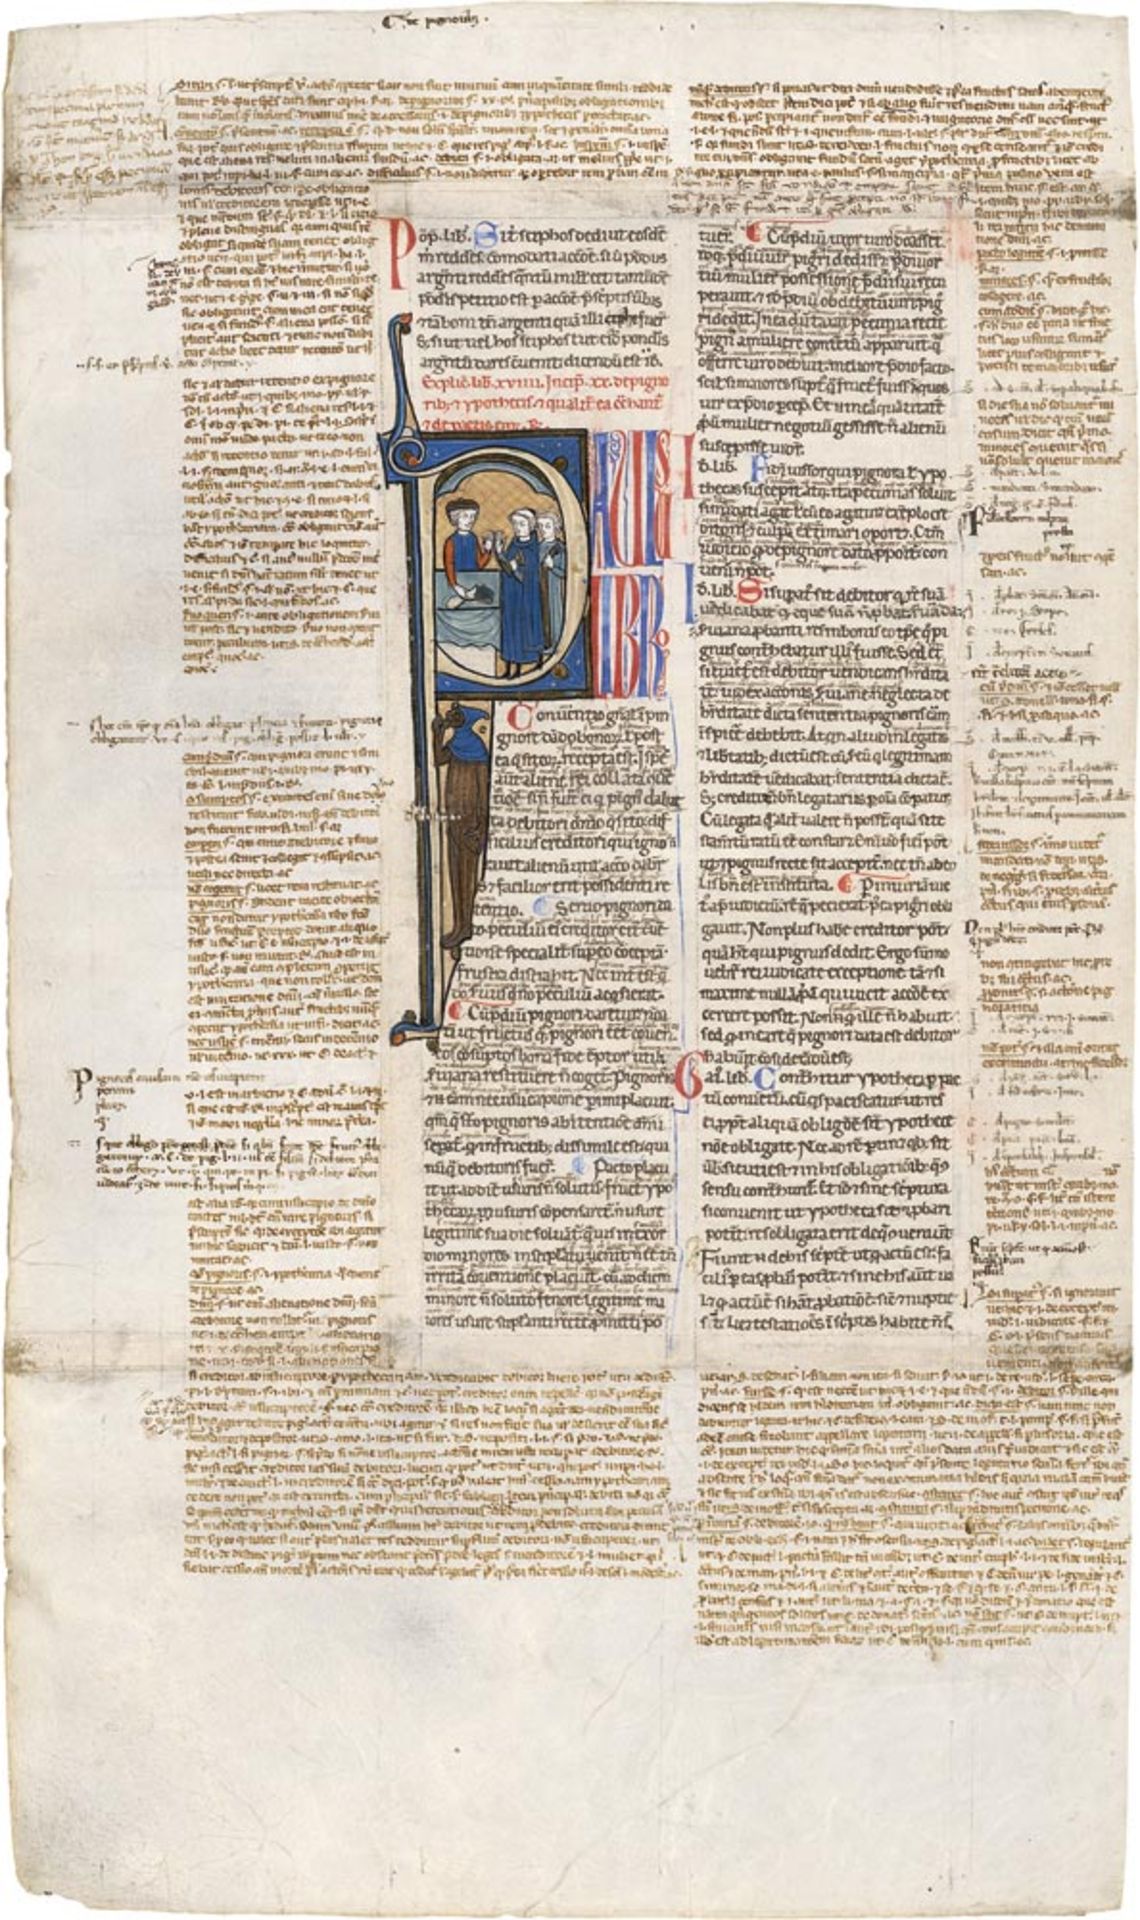 Paulus, Iunius: "De de pignoribus". Einzelblatt aus einer Handschrift um 1250